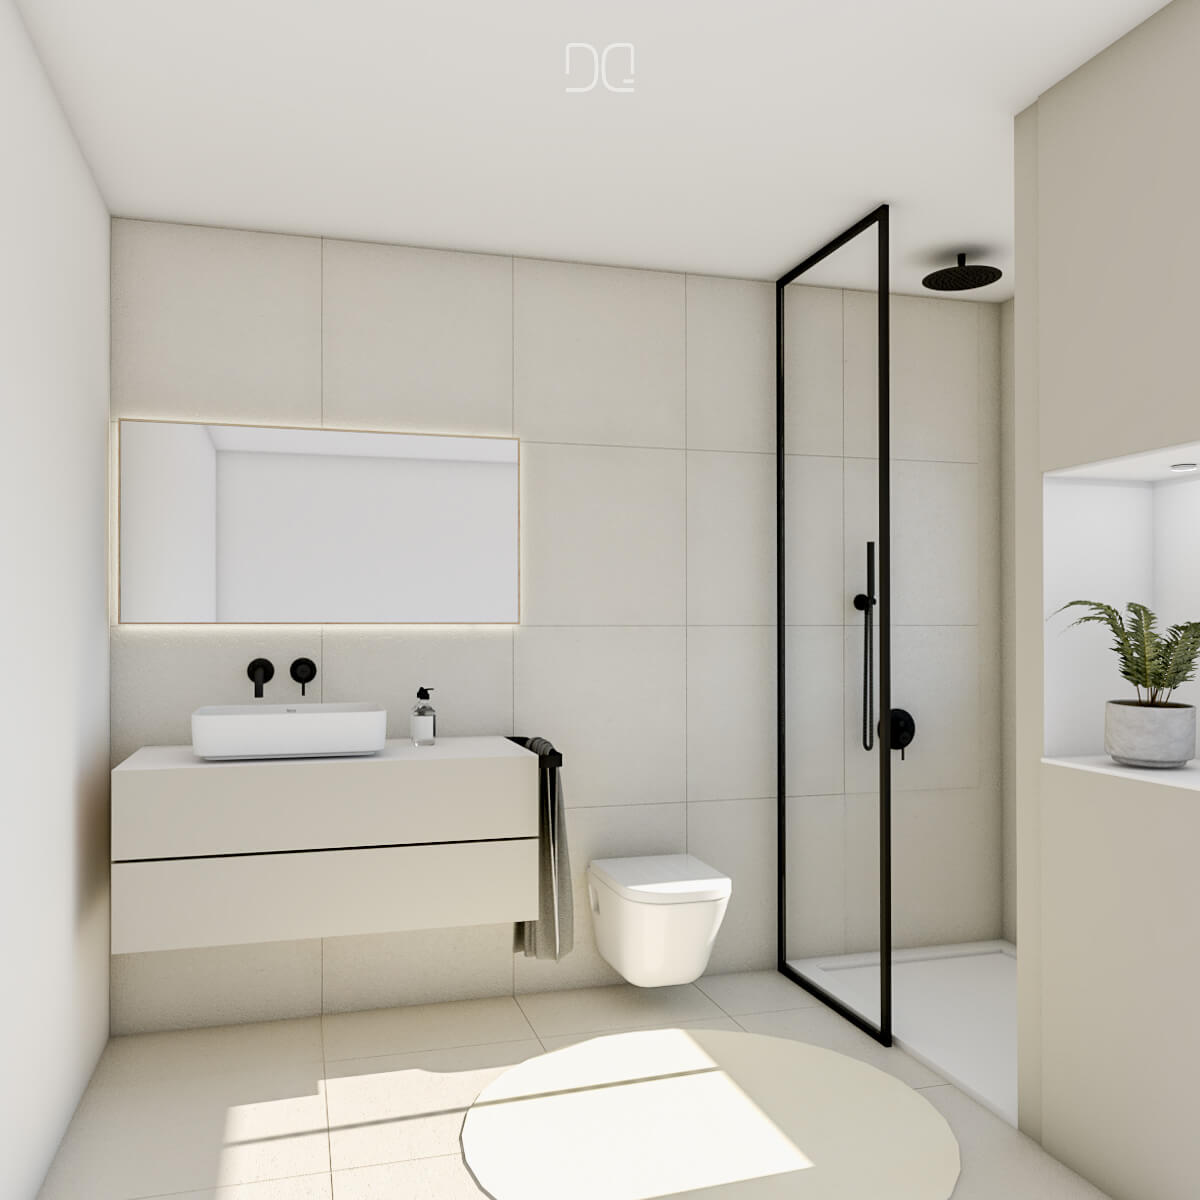 proyecto Interiorismo reforma integral de piso baño